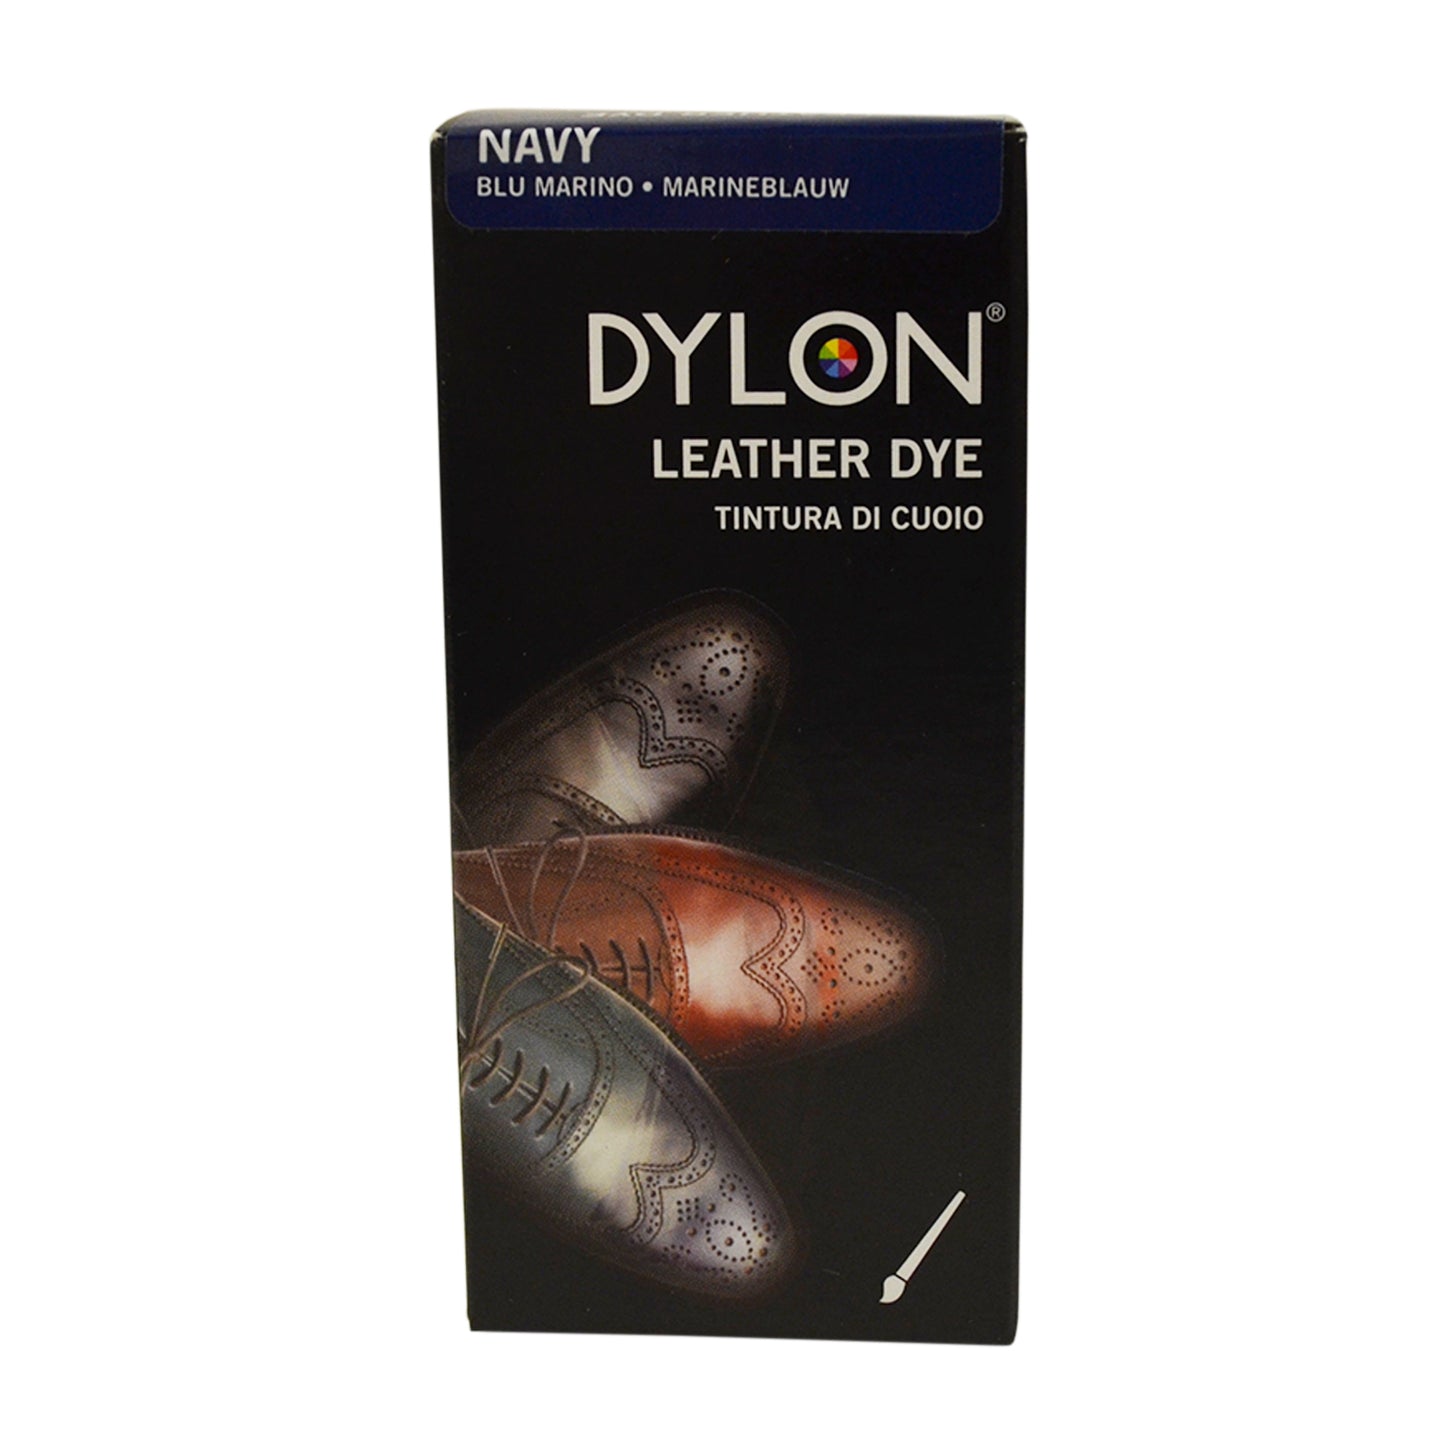 Dylon Leather Dye (50ml)